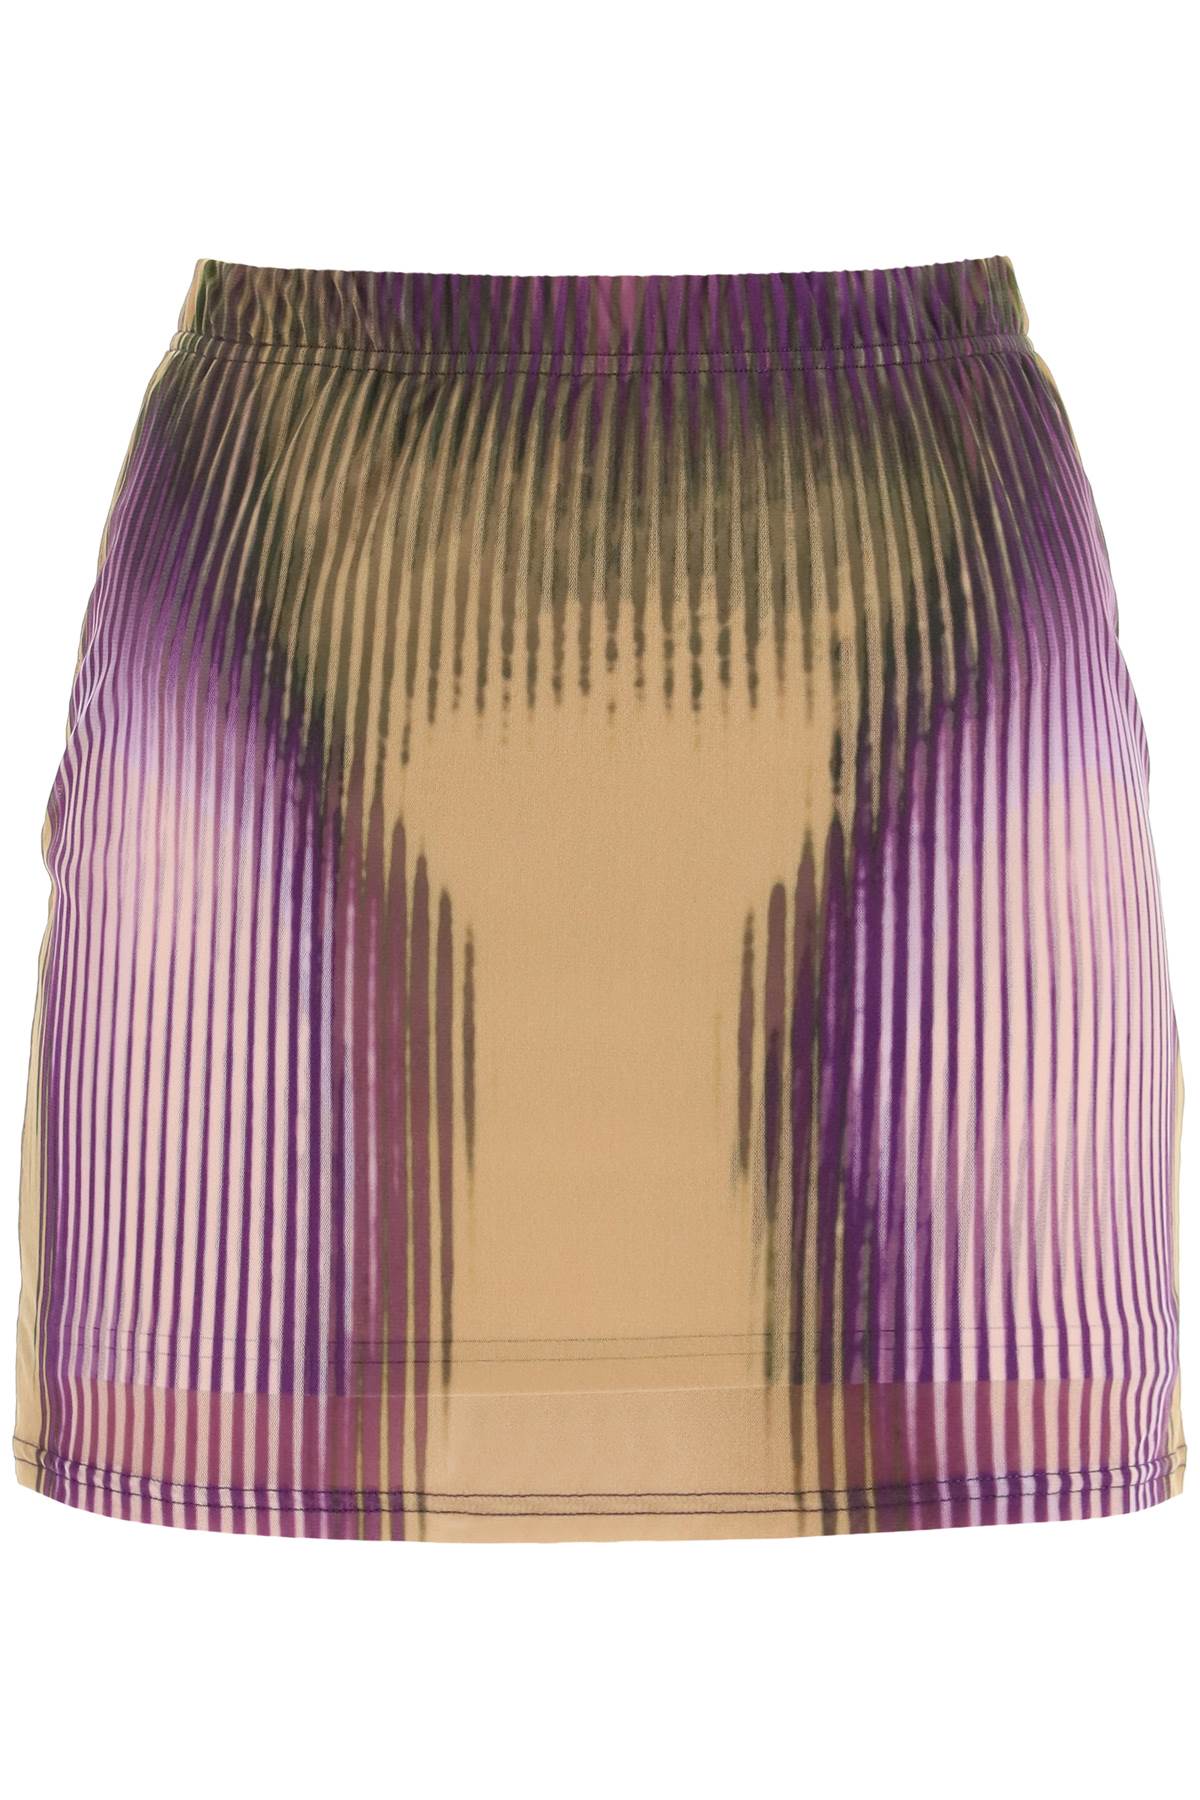 Y/Project Trompe Loeil Jean Paul Gaultier Mini Skirt